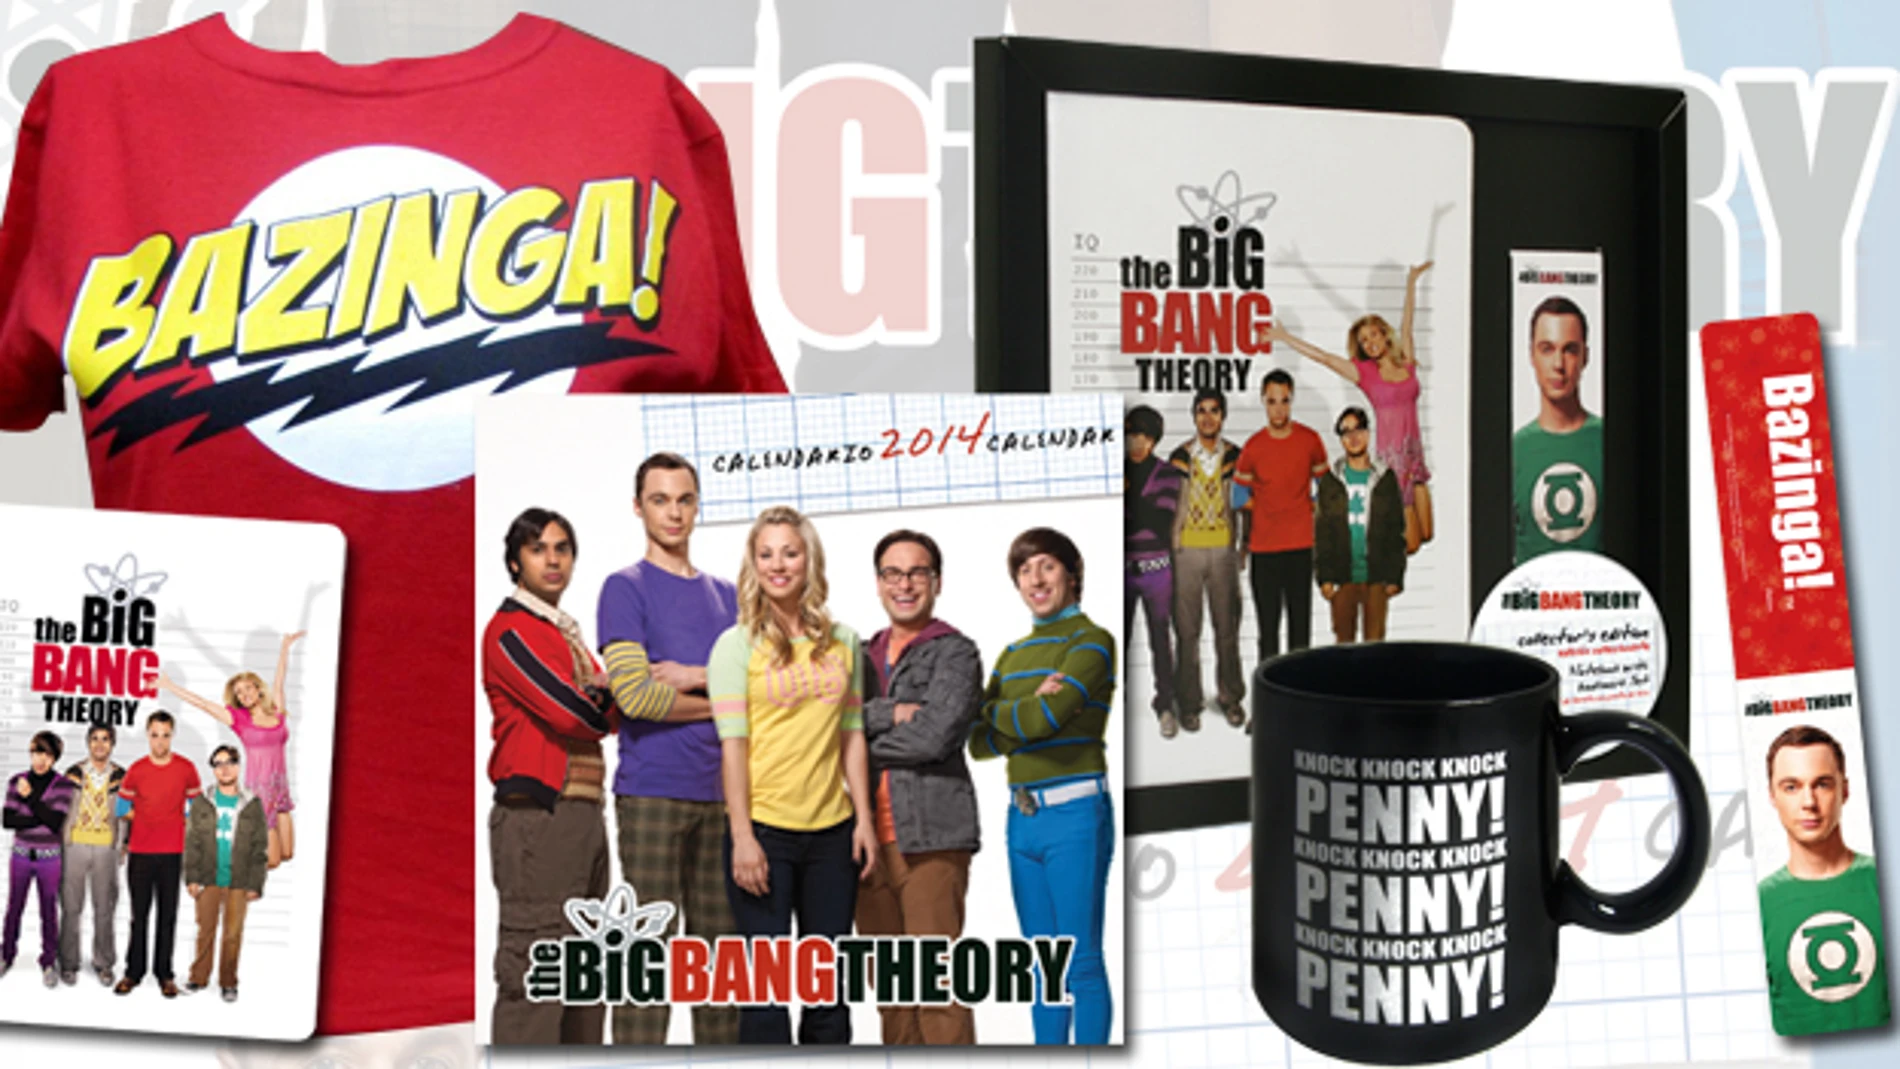 Regalos del concurso "The Big Bang Theory: La Exhibición"